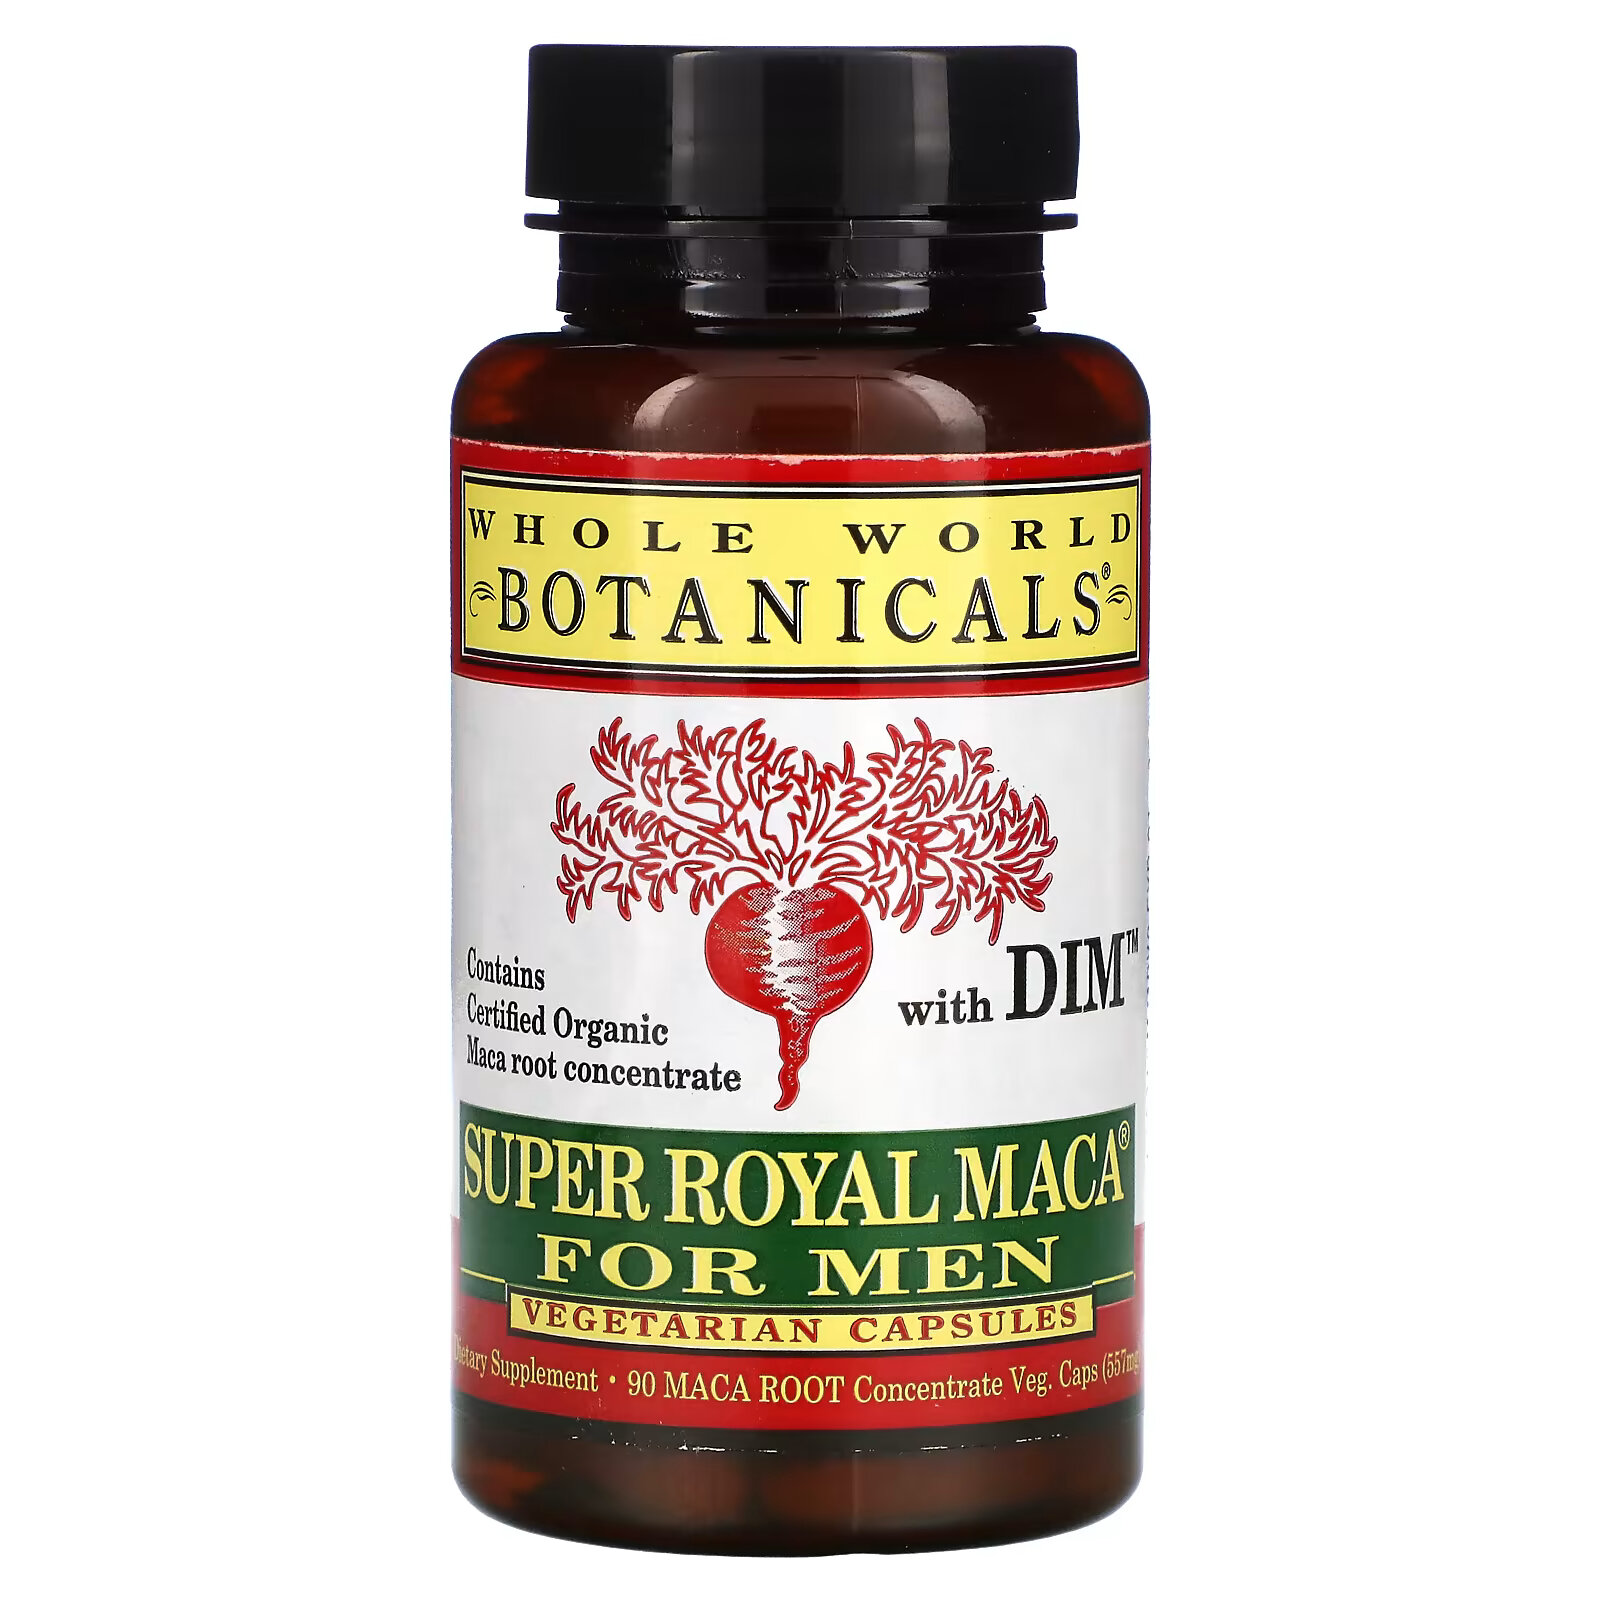 Whole World Botanicals, Super Royal Maca For Men, препарат из маки для мужчин, 500 мг, 90 вегетарианских капсул